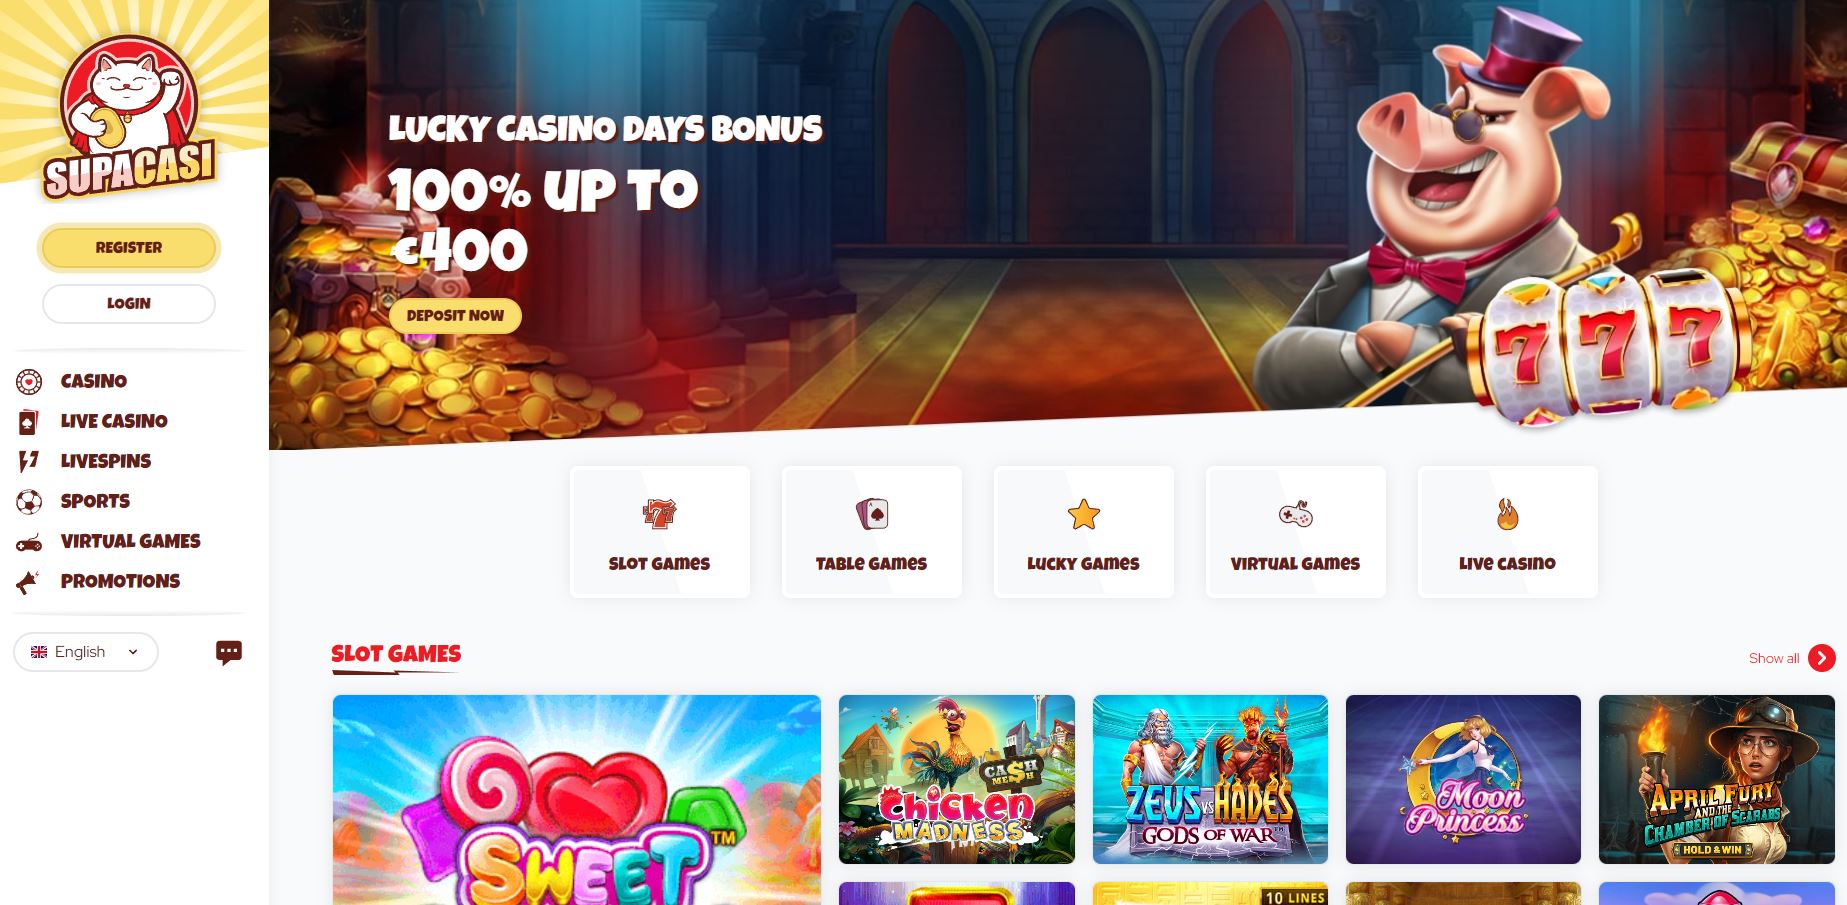 Supacasi, online slots casino sites